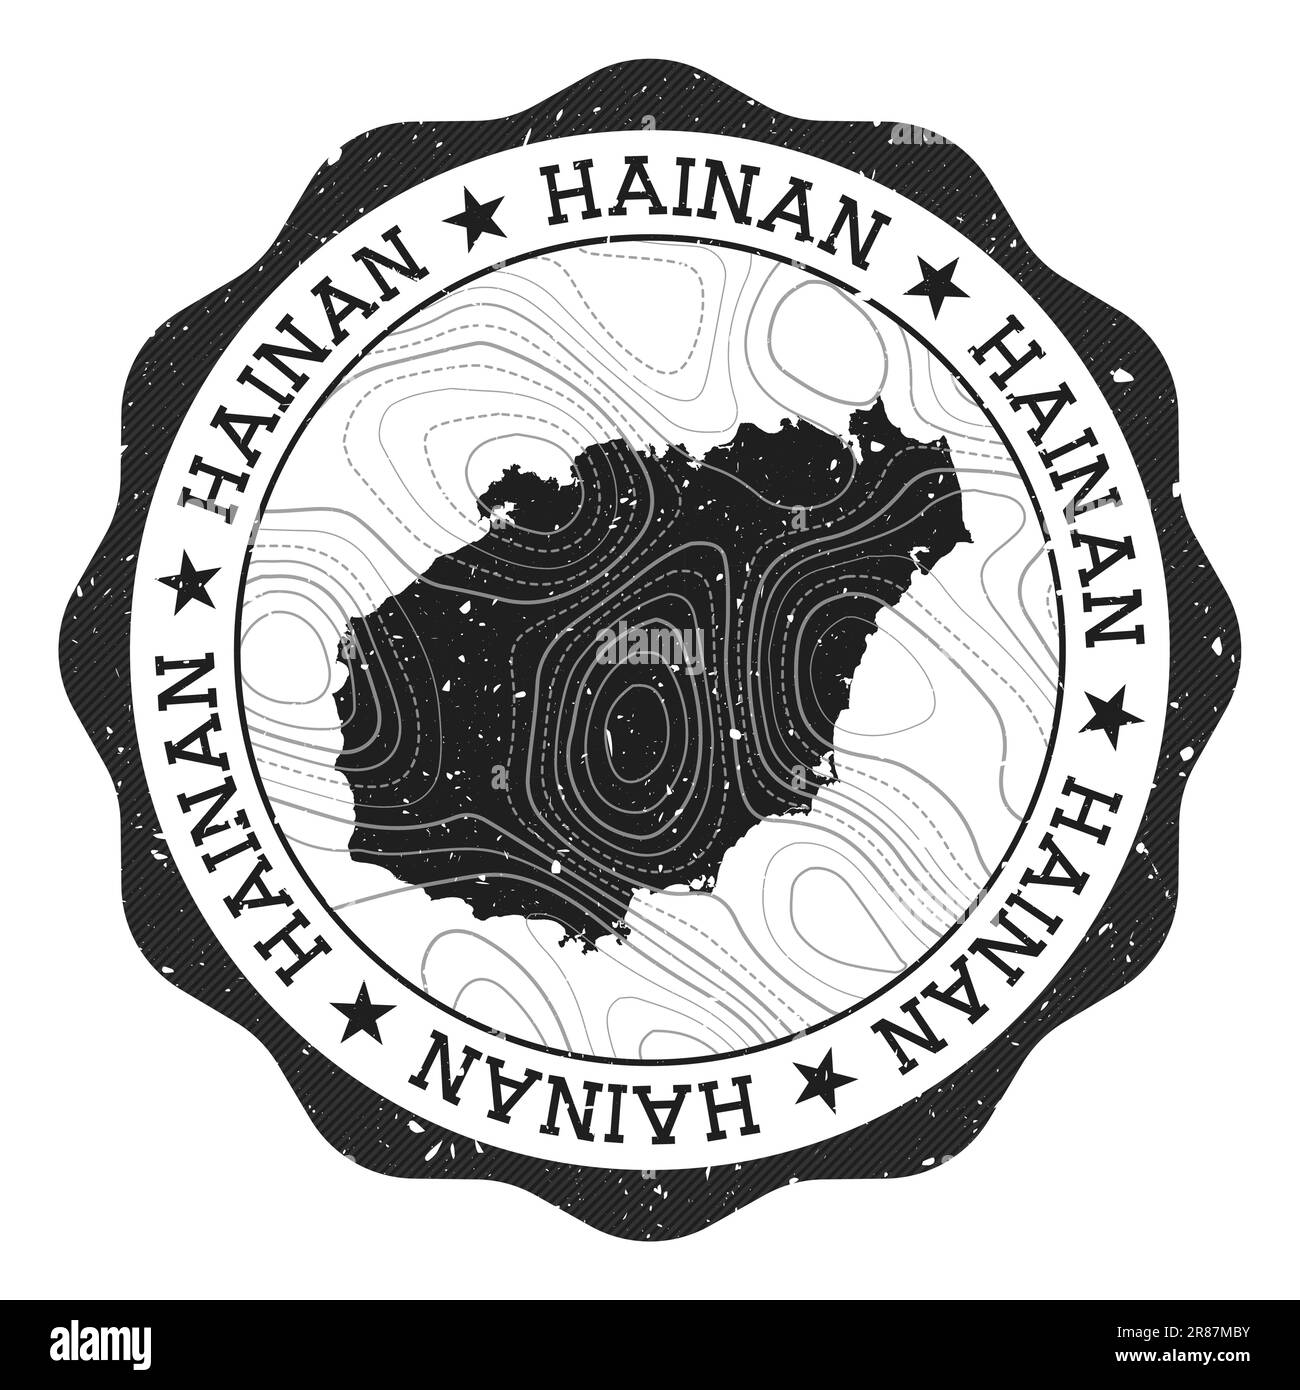 Hainan-Außenstempel. Runder Aufkleber mit Karte der Insel mit topografischen Isolinien. Vektordarstellung. Kann als Abzeichen, Logo, Label oder Sticker verwendet werden Stock Vektor